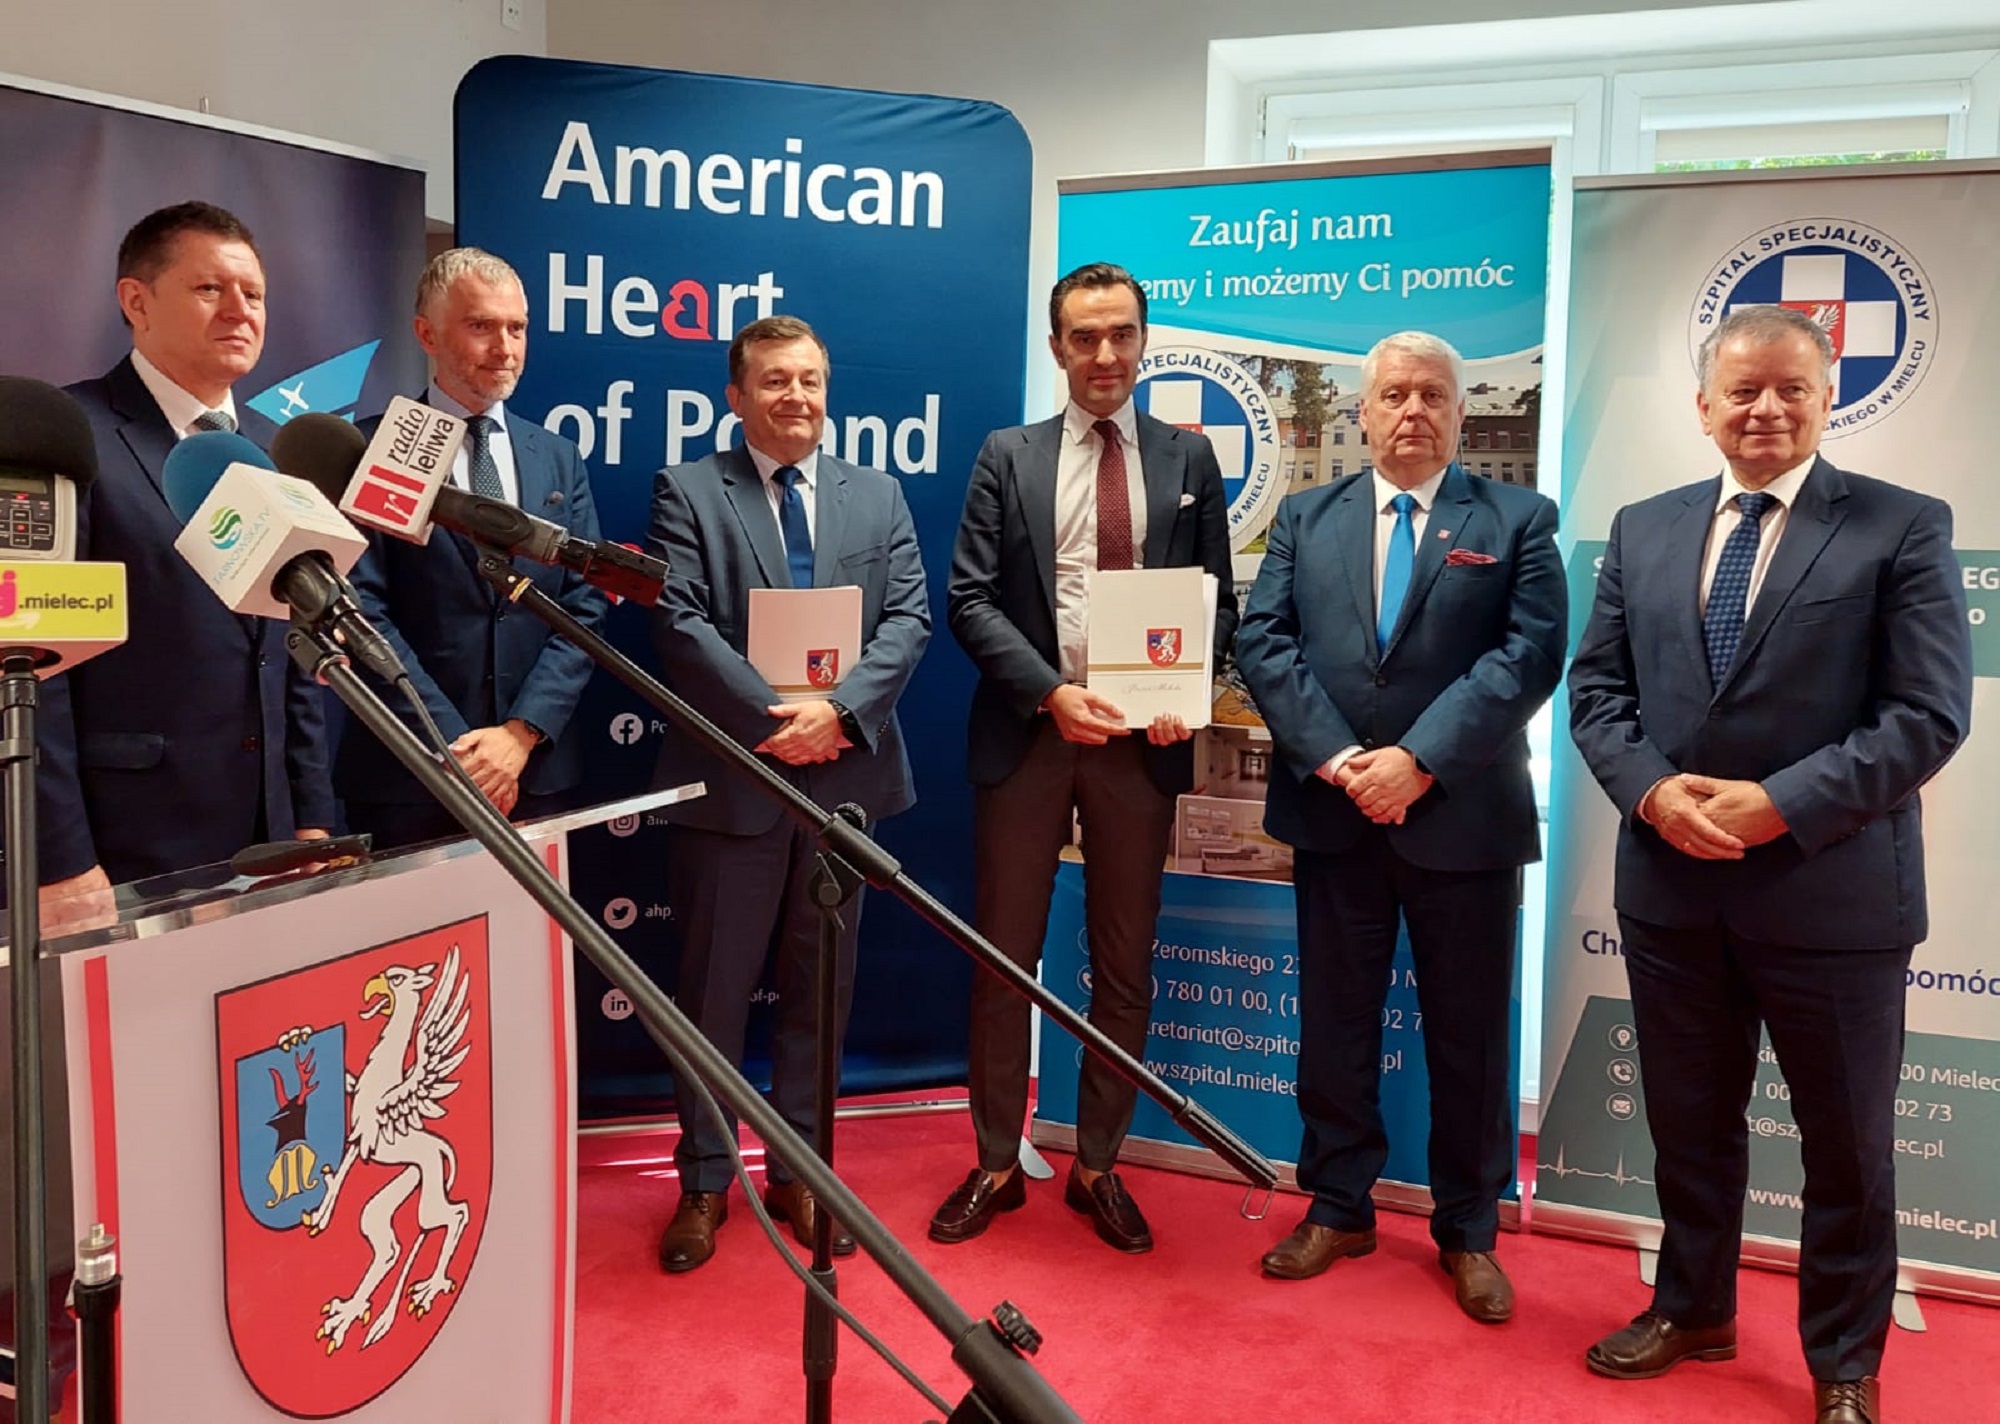 Grupa American Heart of Poland podpisała 10-letnią umowę w Mielcu